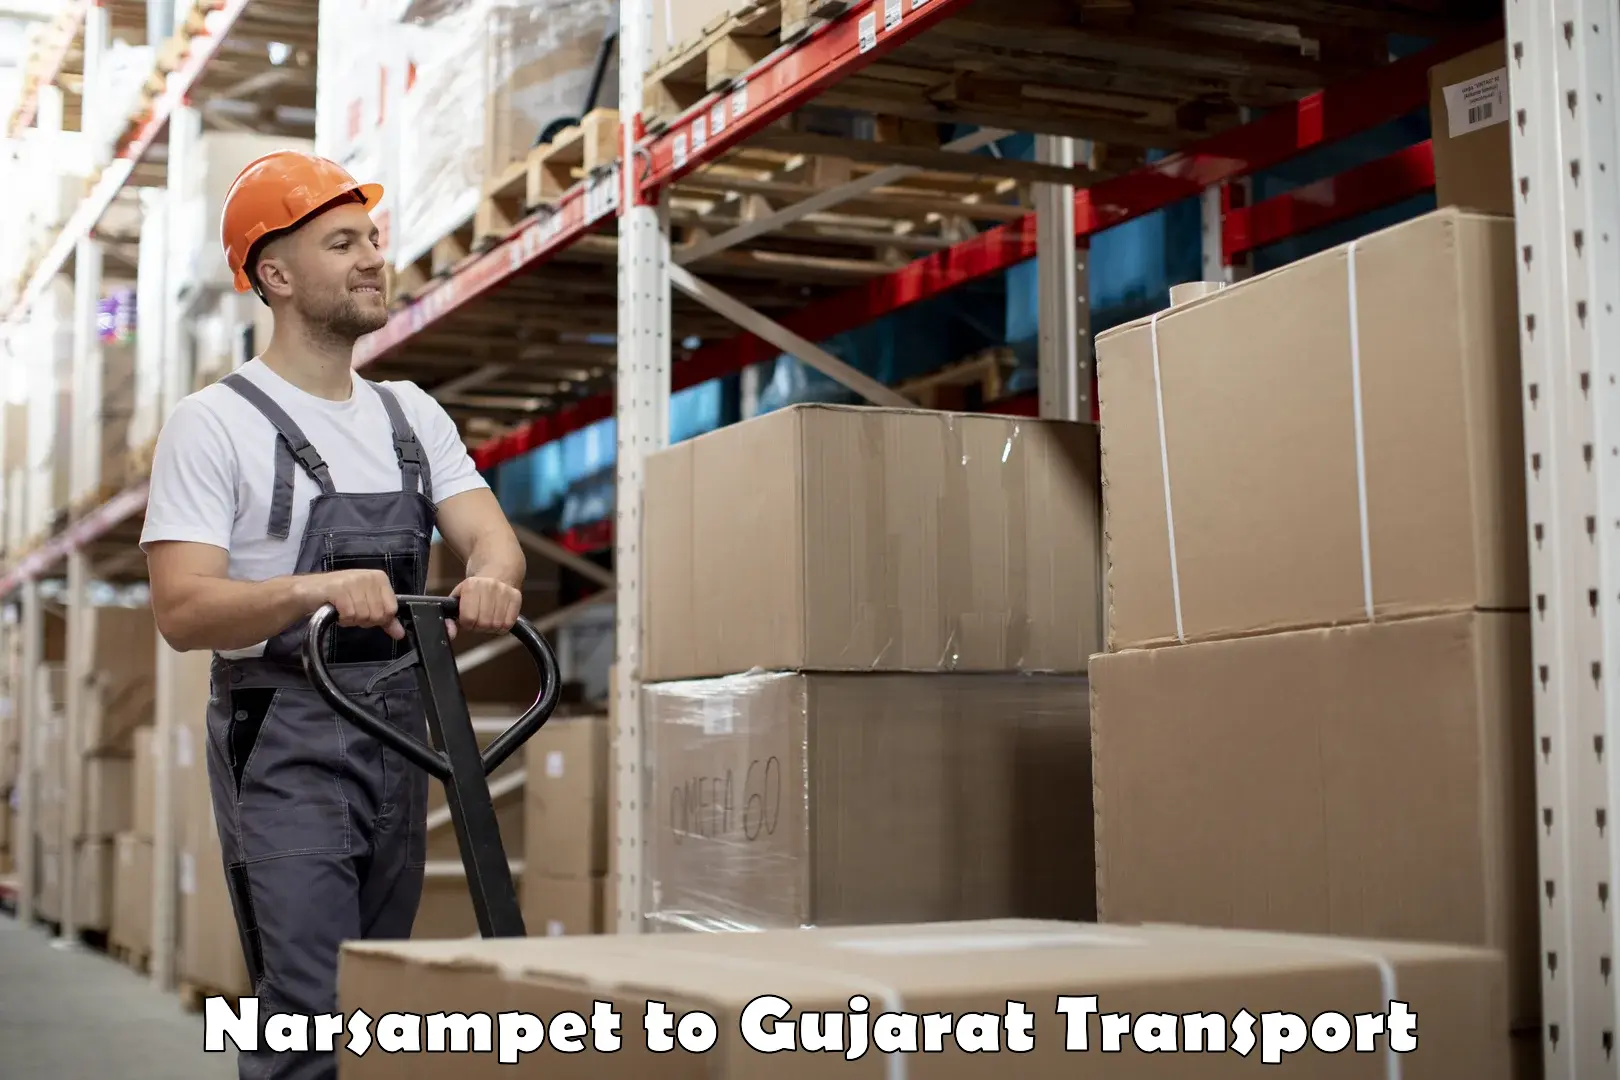 Luggage transport services Narsampet to Gujarat